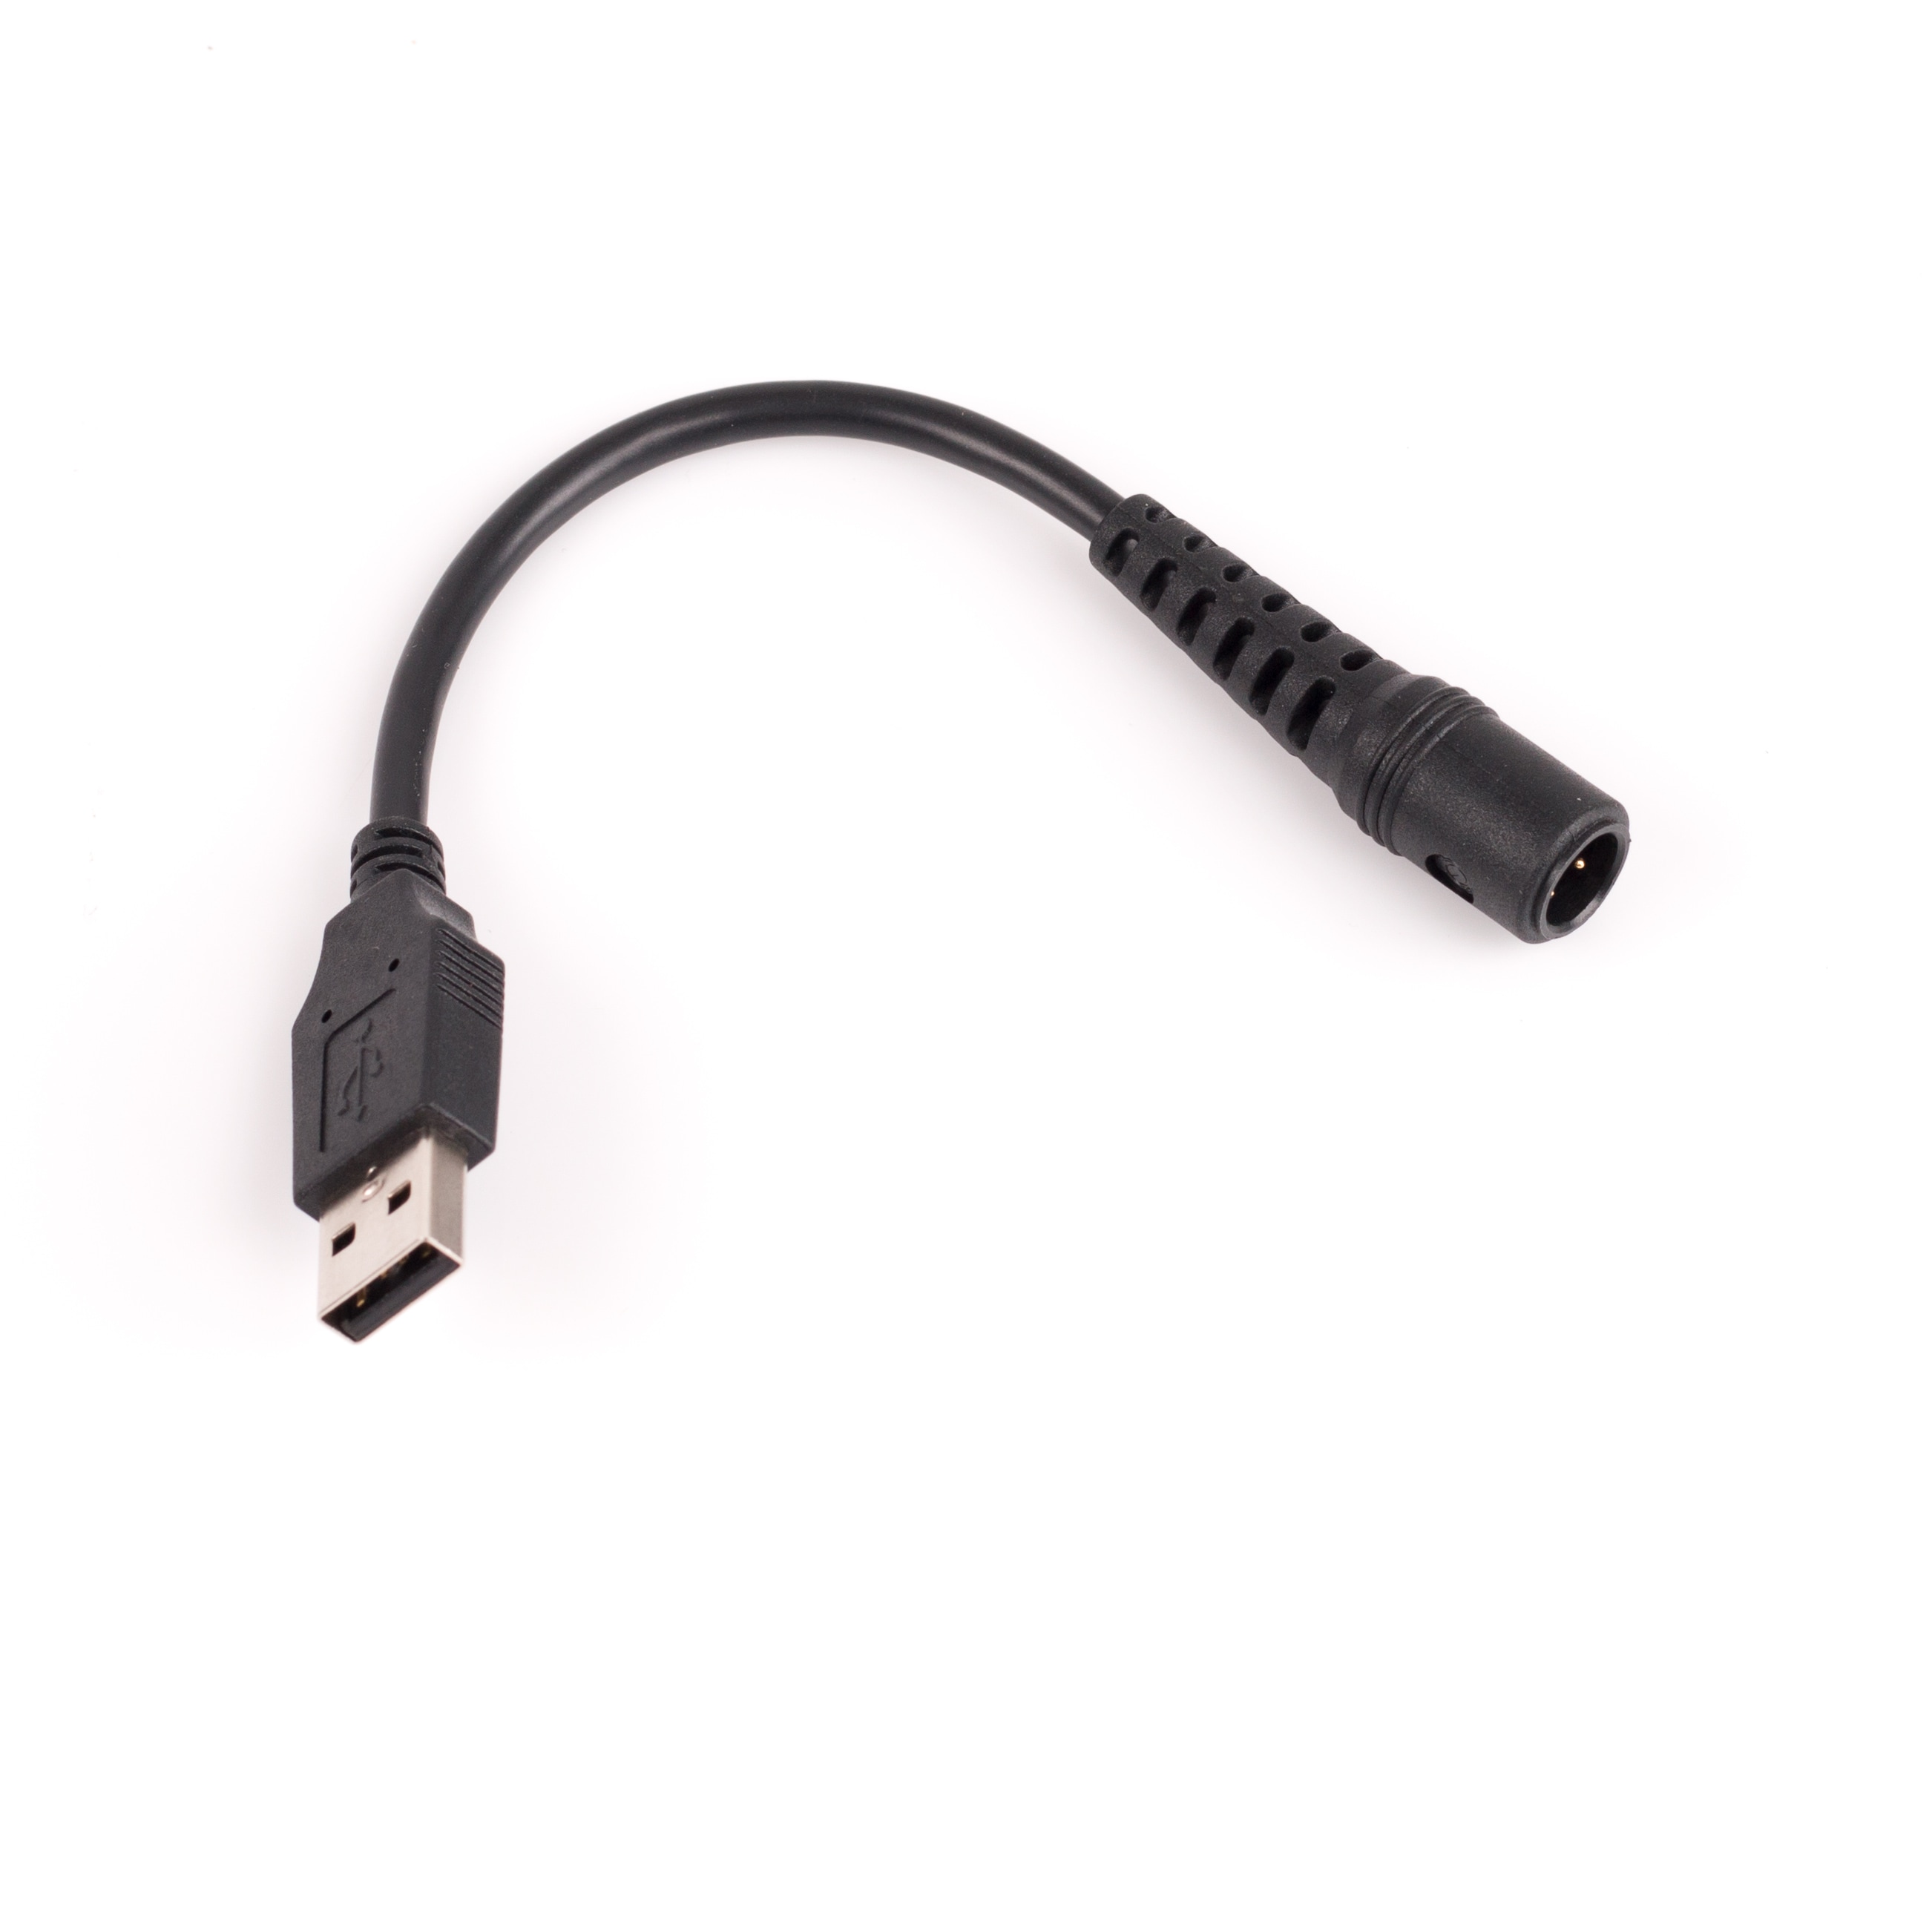 USB -kabel til flash -nøgle